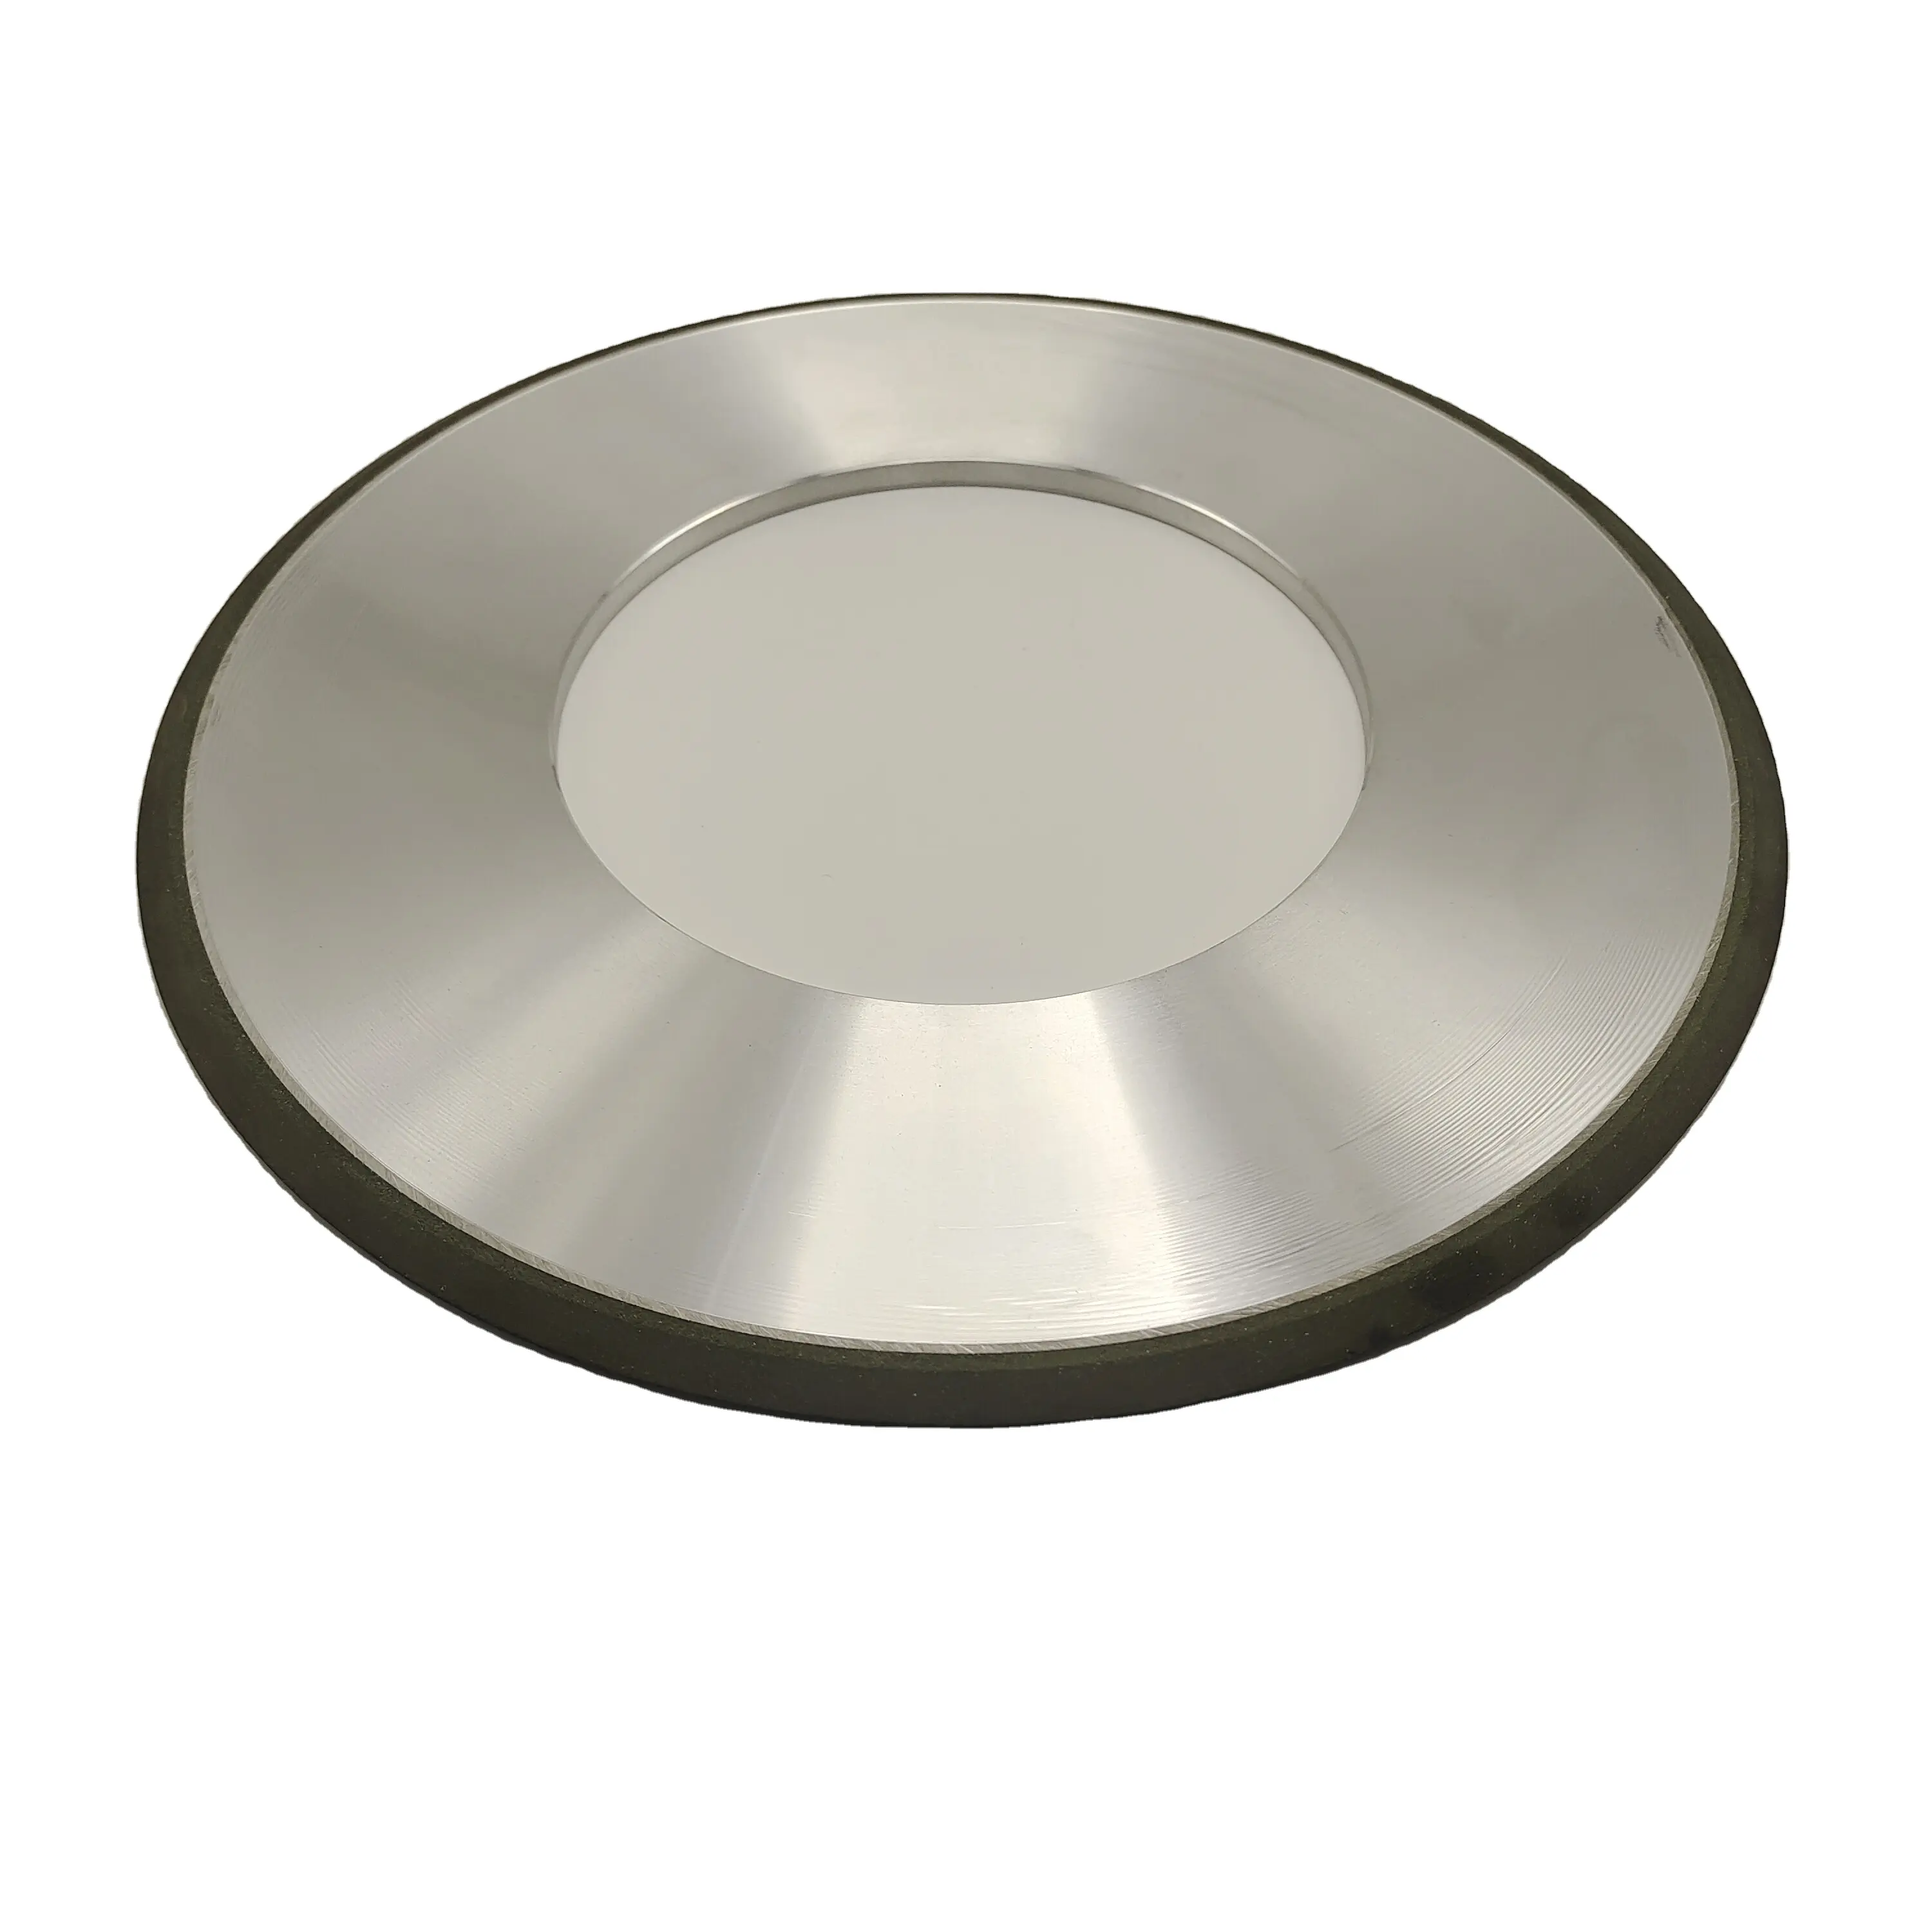 Rueda de copa de cerámica tipo Big1a1 para afilar CVD PCD PCBN herramienta 400mm muela de diamante de Unión vitrificada